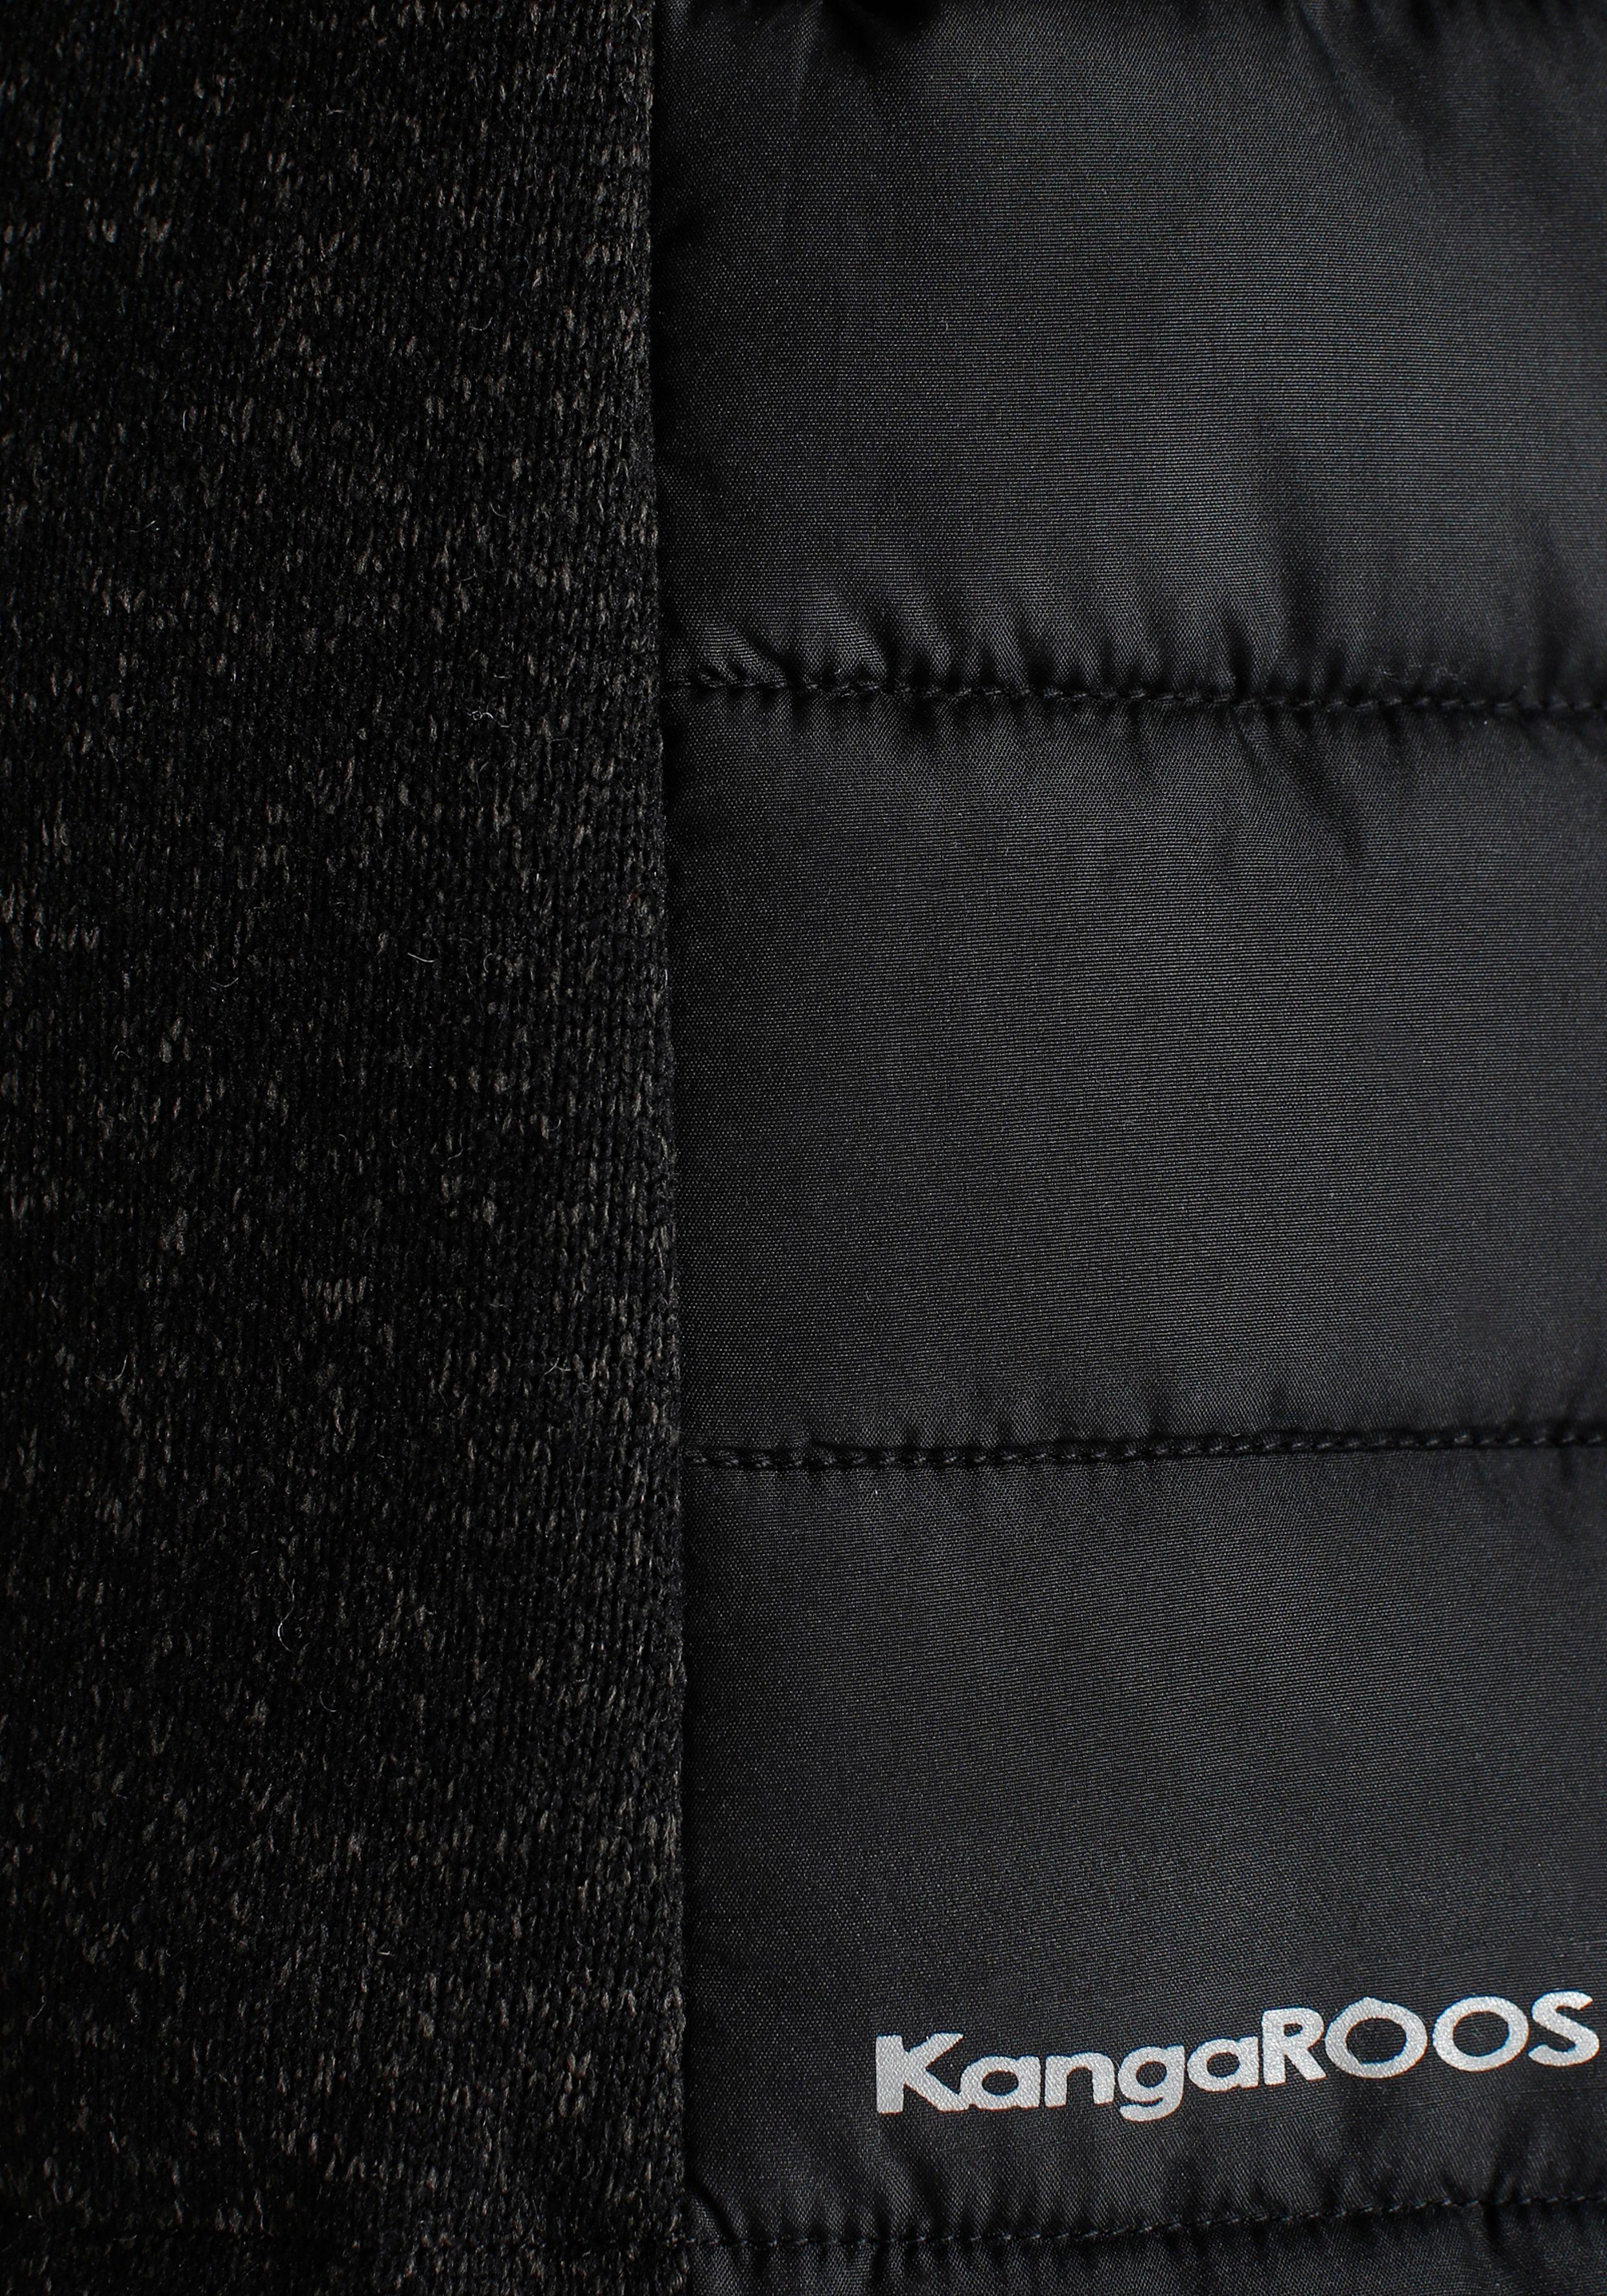 NEUE KangaROOS abnehmbarer Material-Mix schwarz mit KOLLEKTION trendigem - Steppjacke Kapuze im